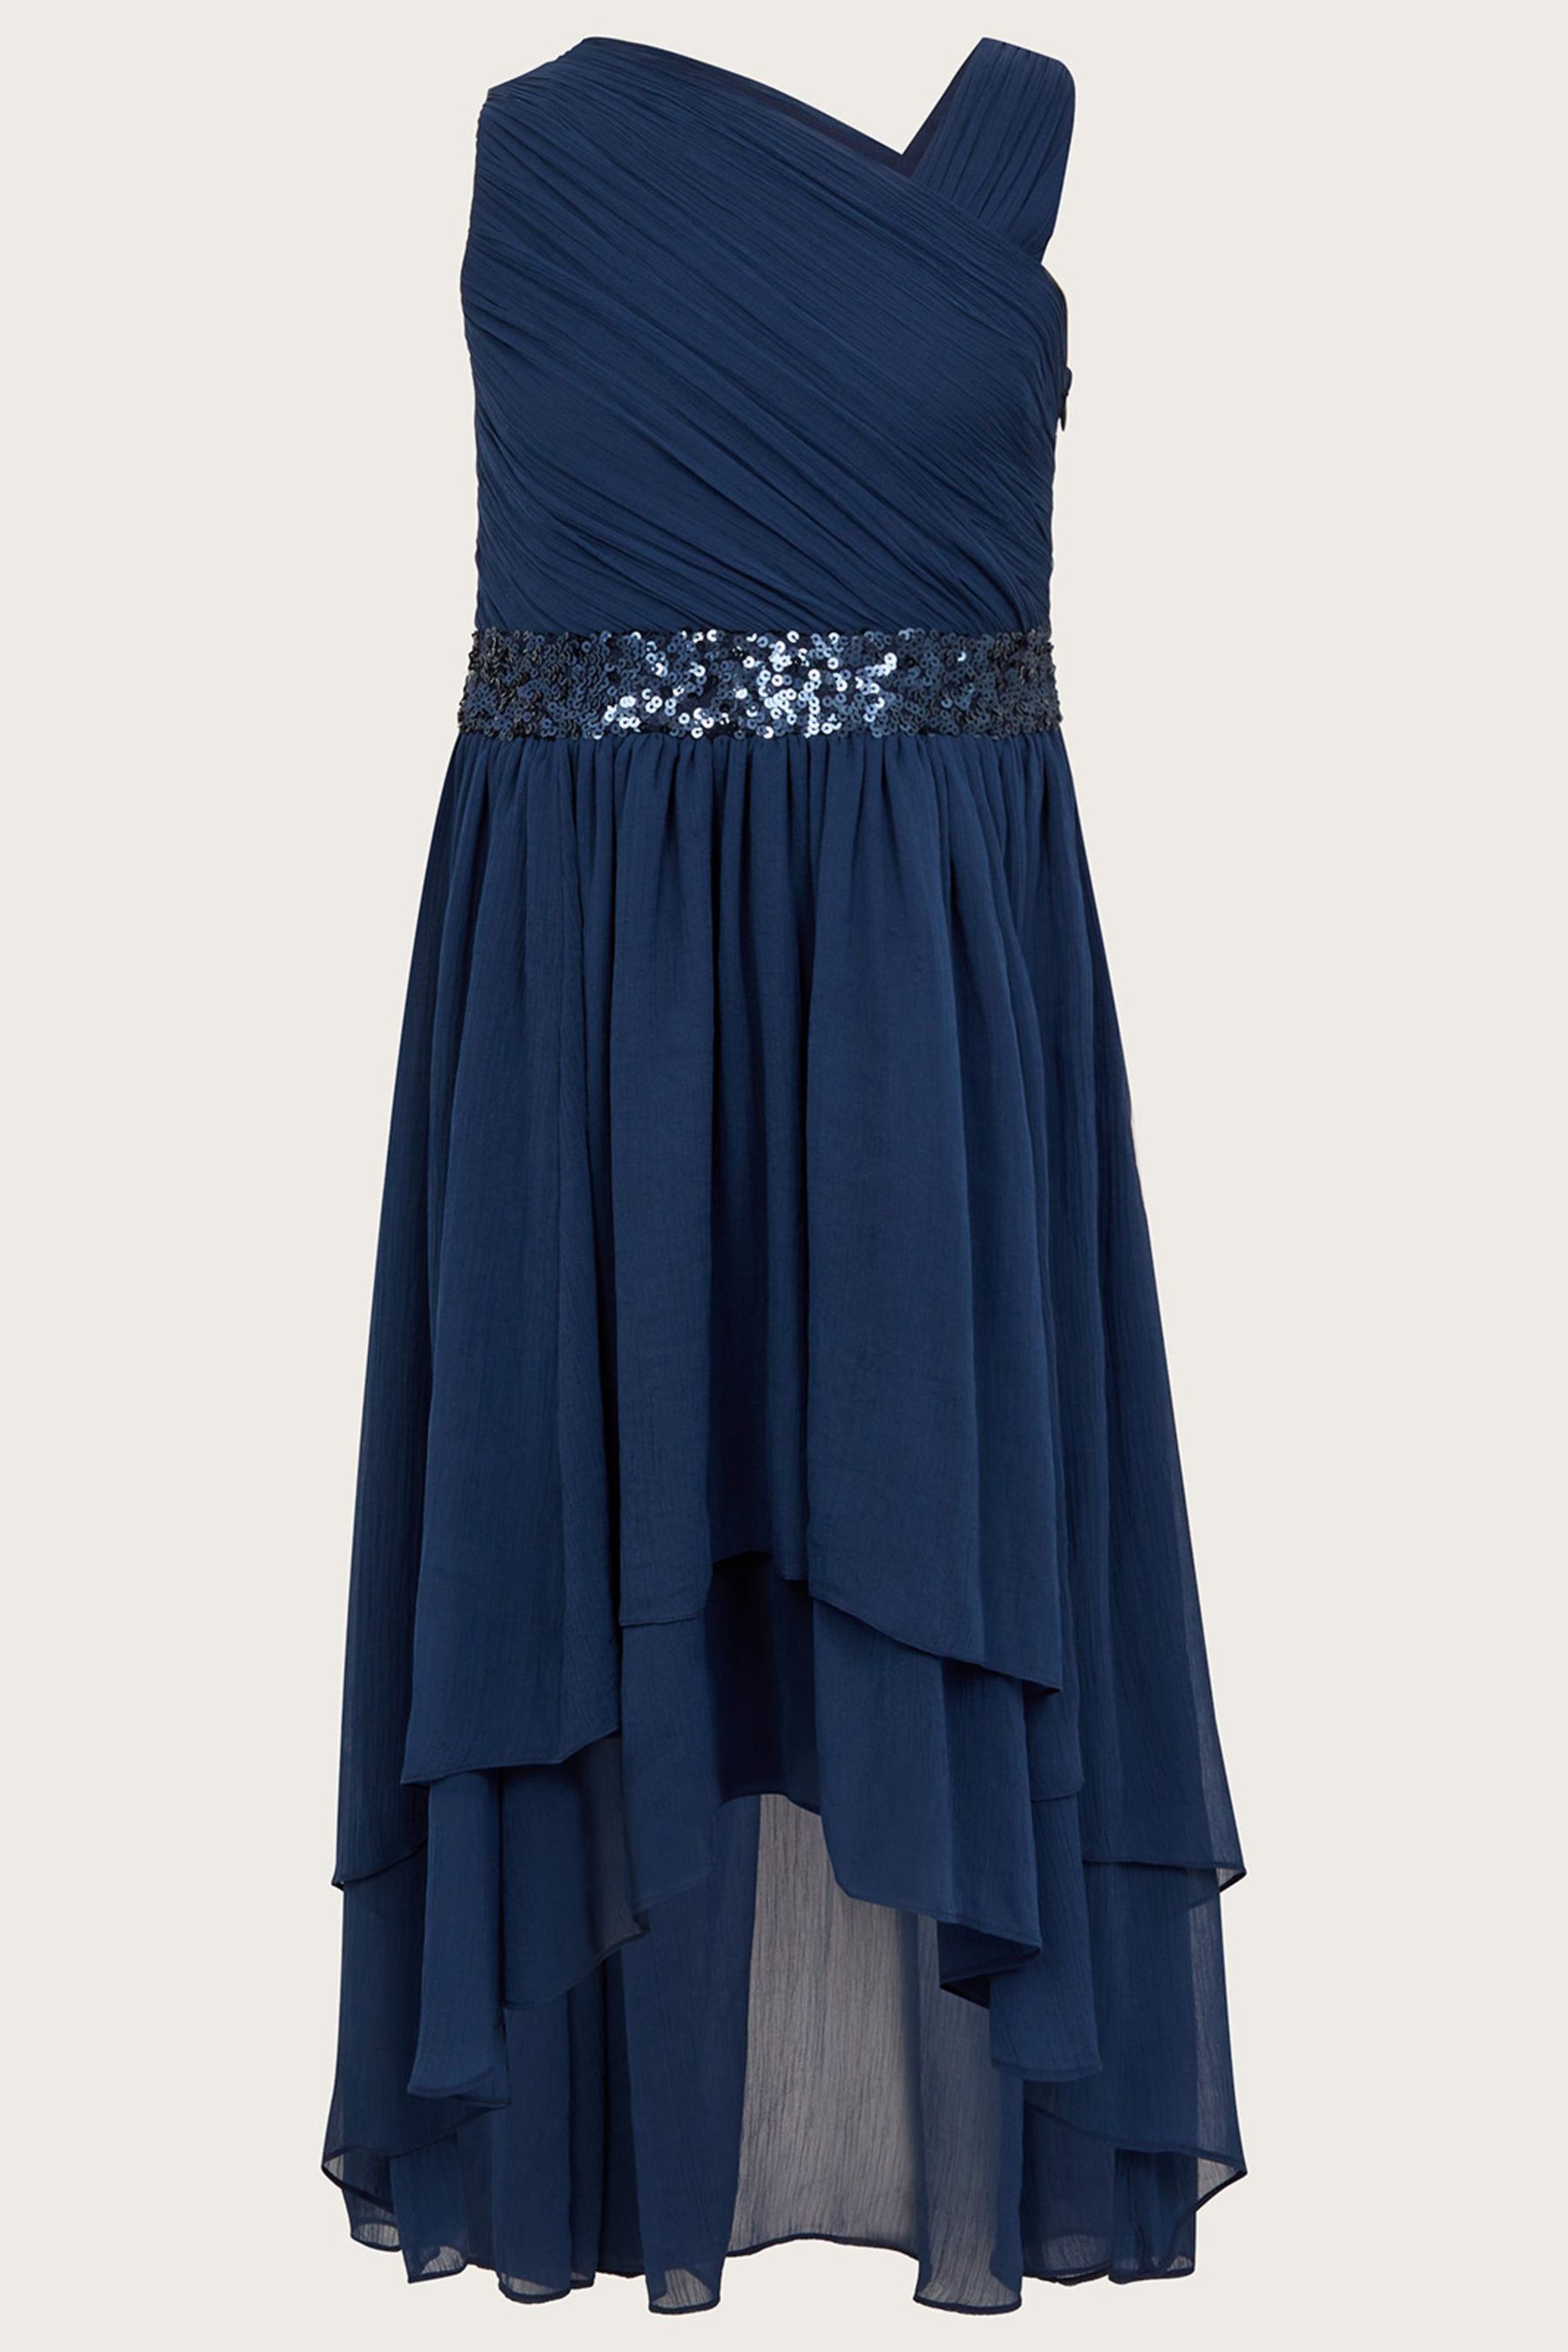 Синее выпускное платье Эбигейл на одно плечо Monsoon, синий